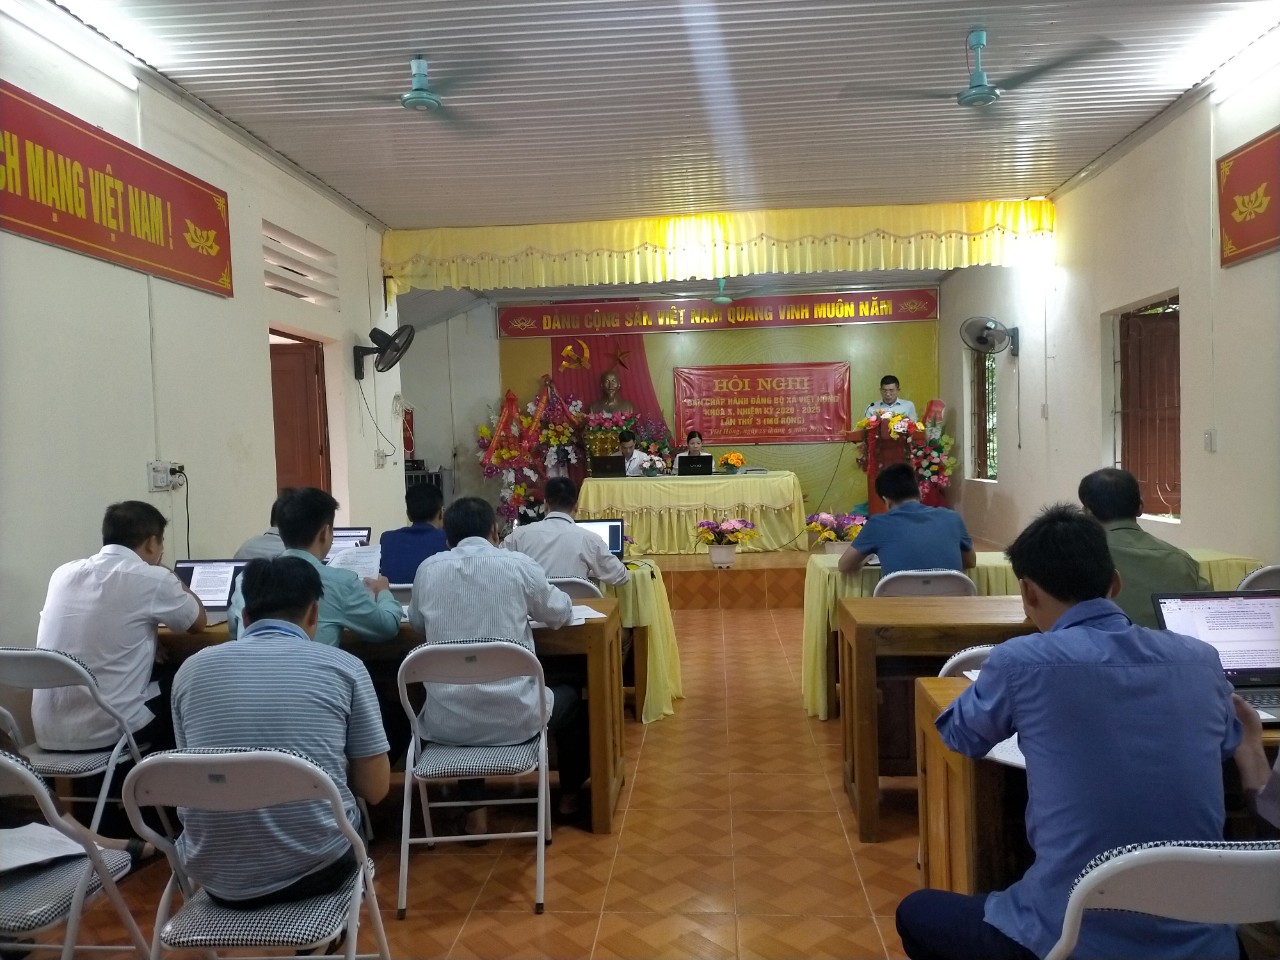 Hội nghị Ban Chấp Hành Đảng bộ xã Việt Hồng khóa X,  lần thứ 03 (mở rộng).